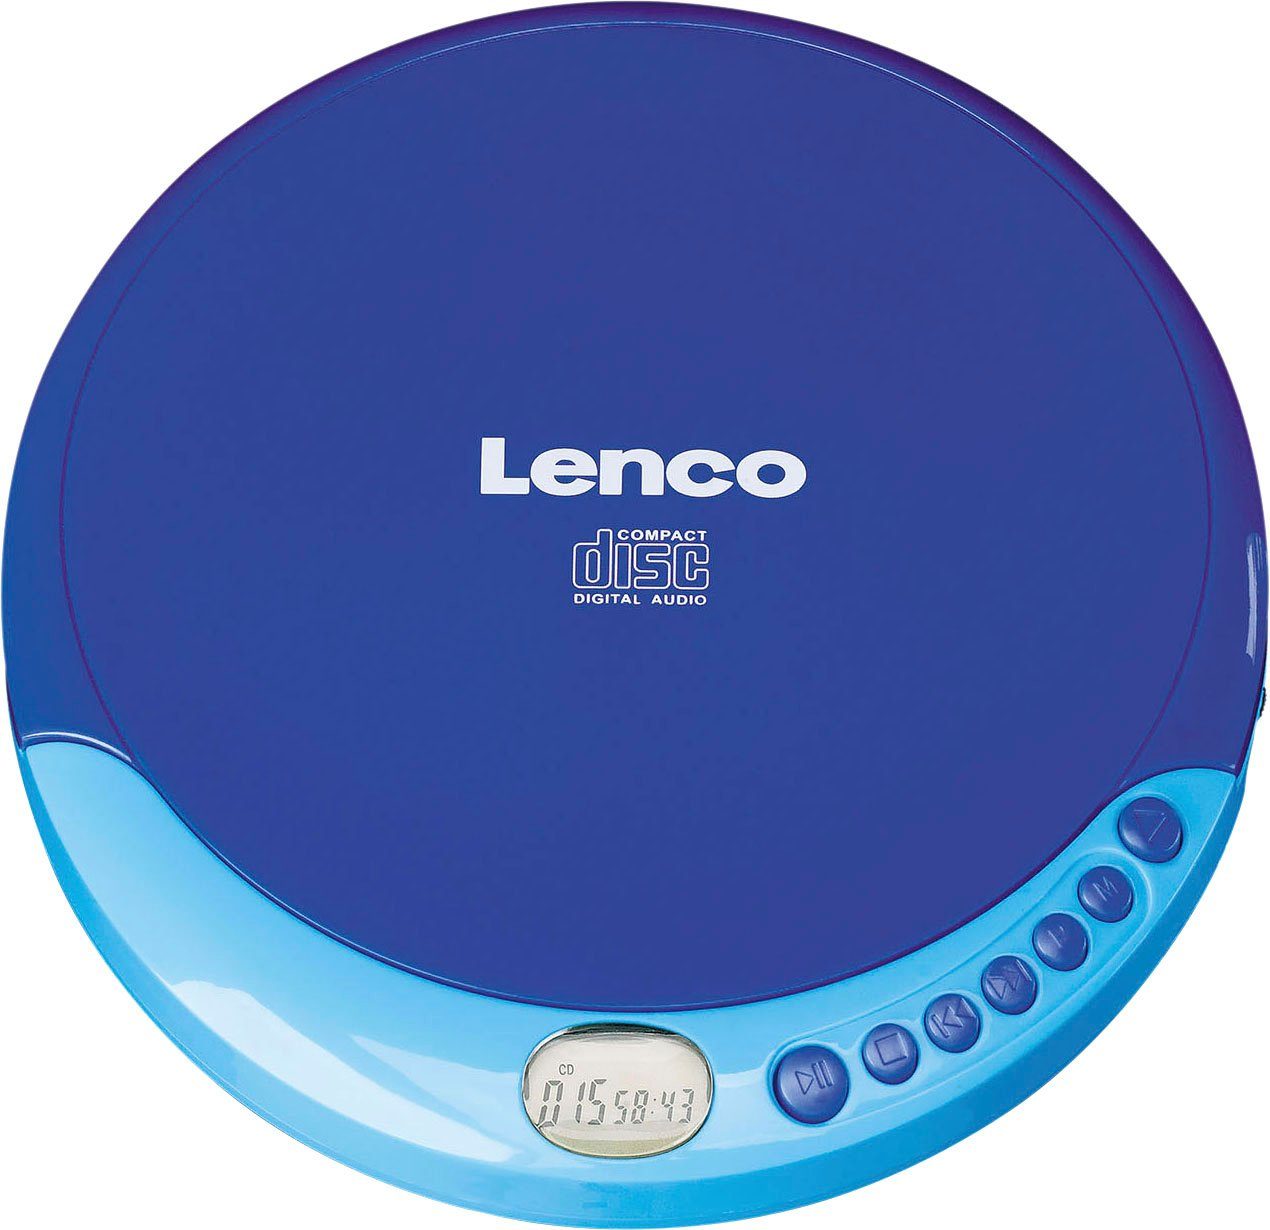 CD-011 CD-Player blau Lenco